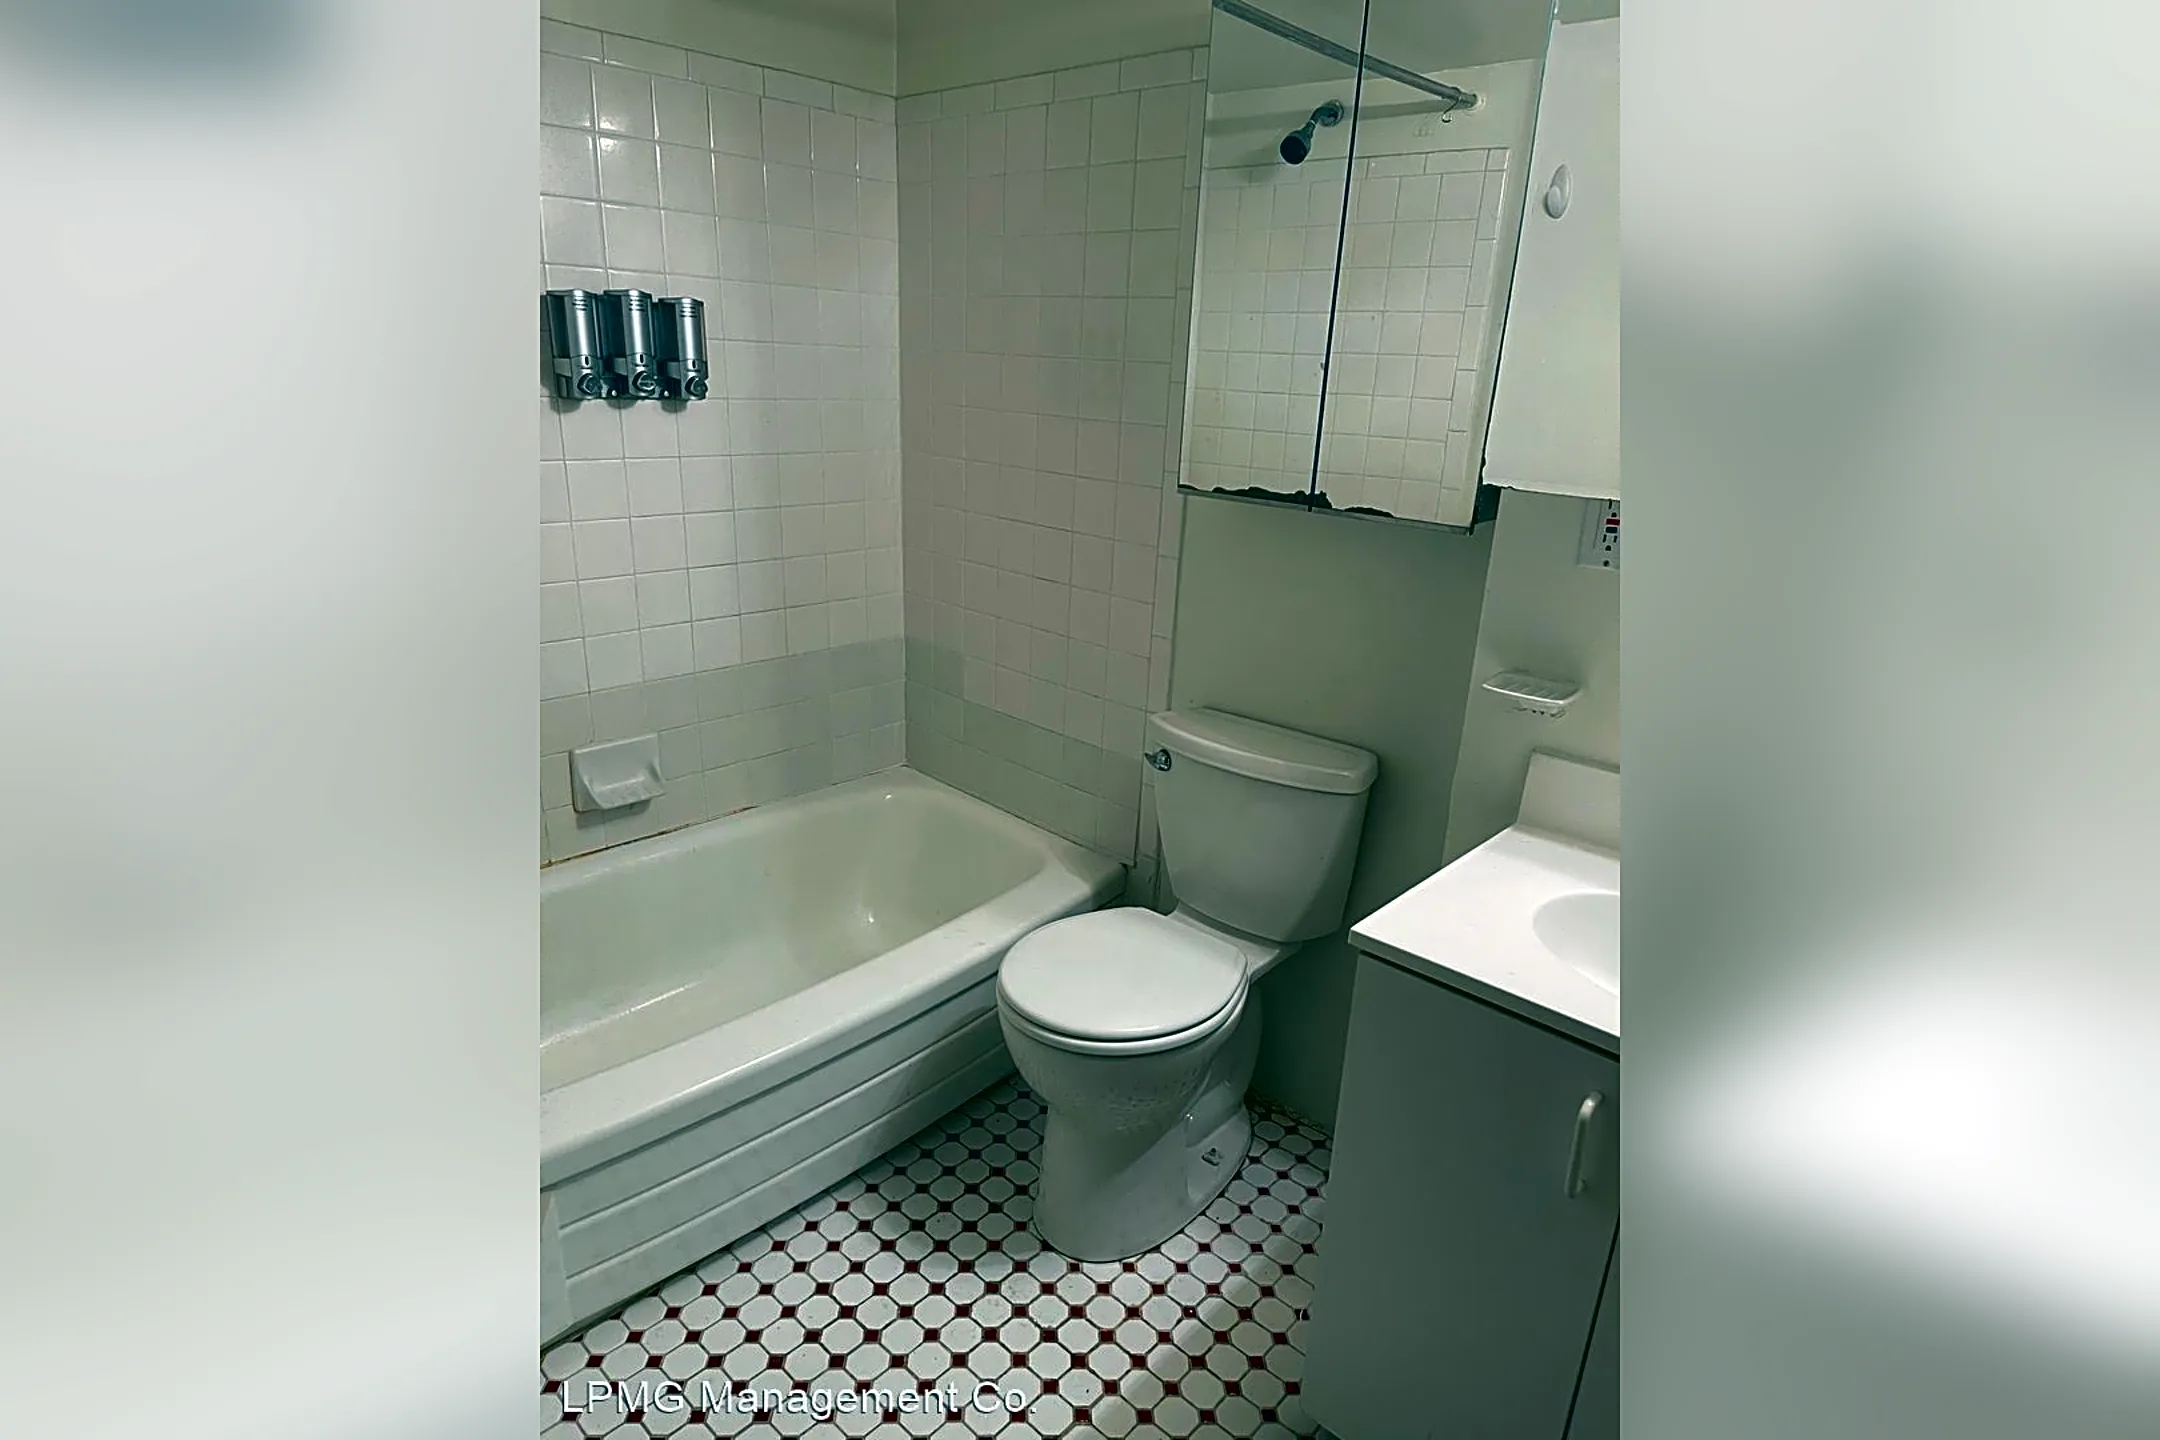 Bathroom - 1214 Waverly Walkway - Philadelphia, PA